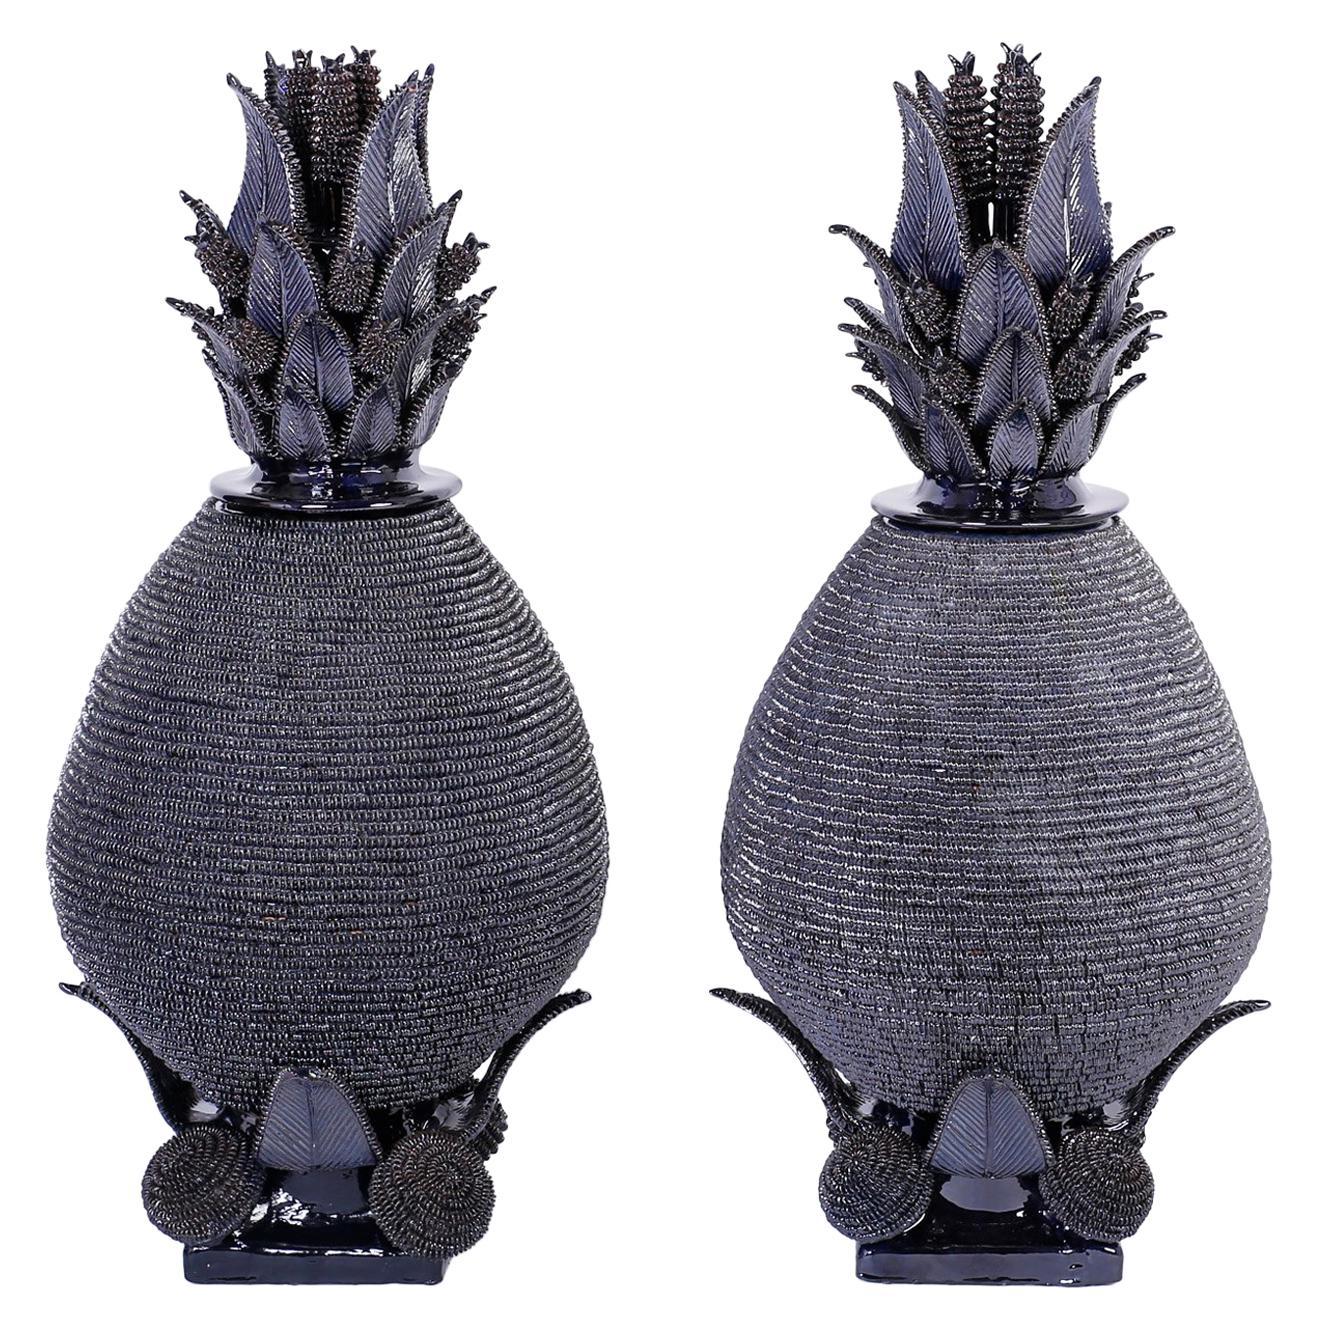 Pair of Blue Glazed Pottery or Terracotta Lidded Pineapple Urns